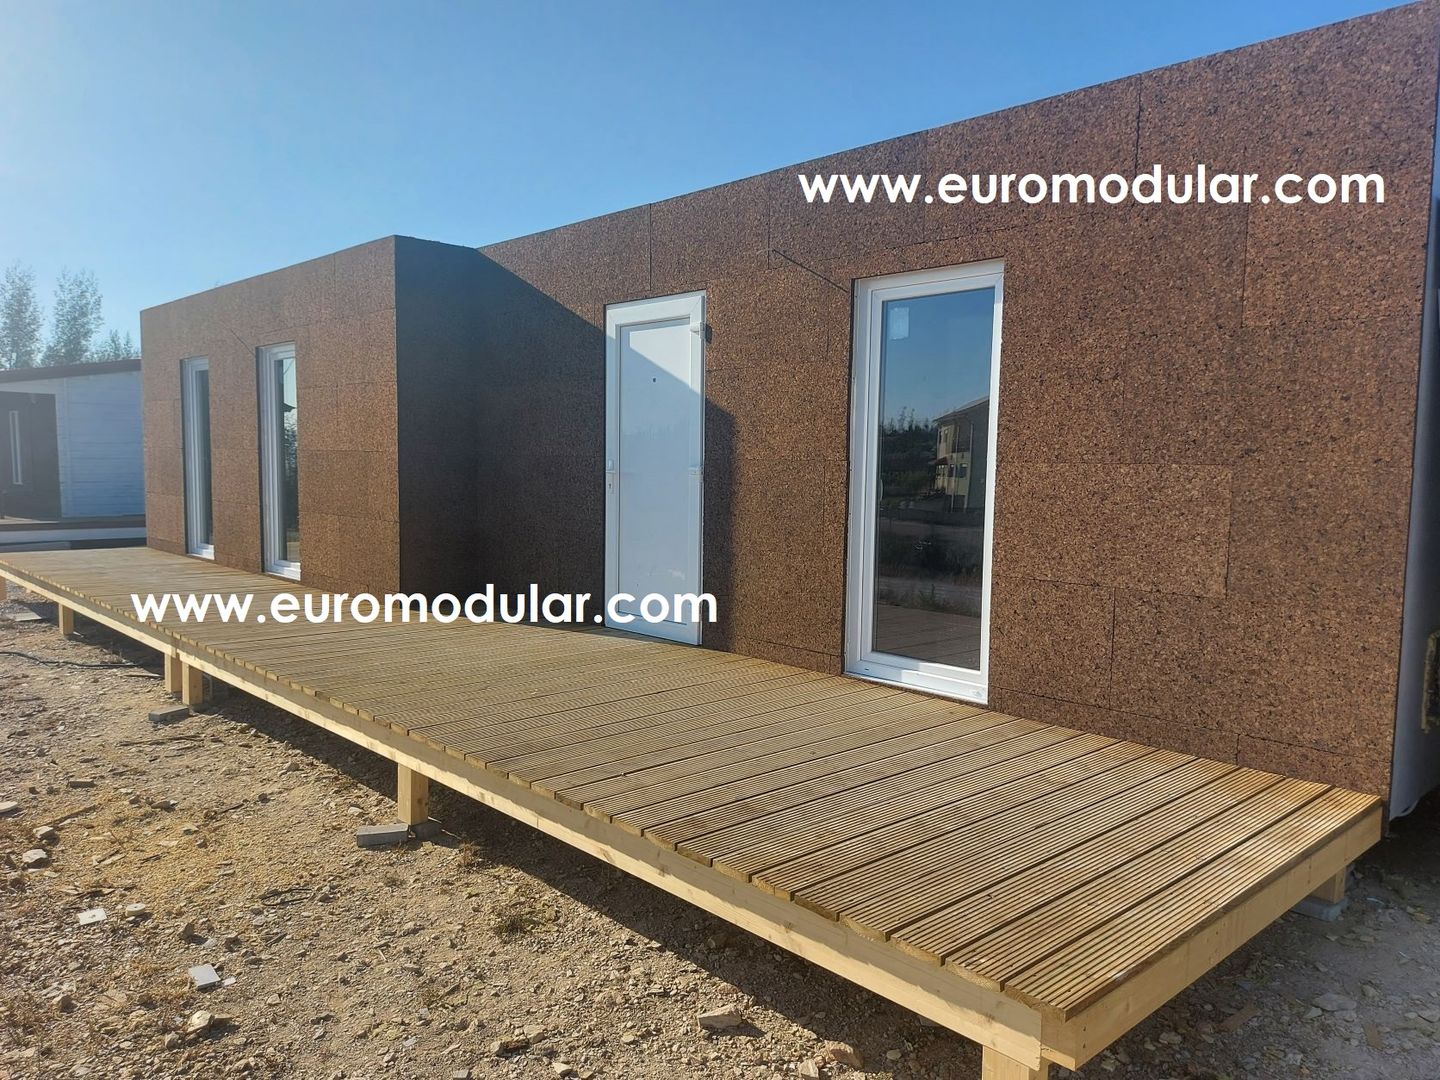 T1 Casa Modular Prefabricada (estrutura metálica), EUROMODULAR EUROMODULAR Prefabricated home